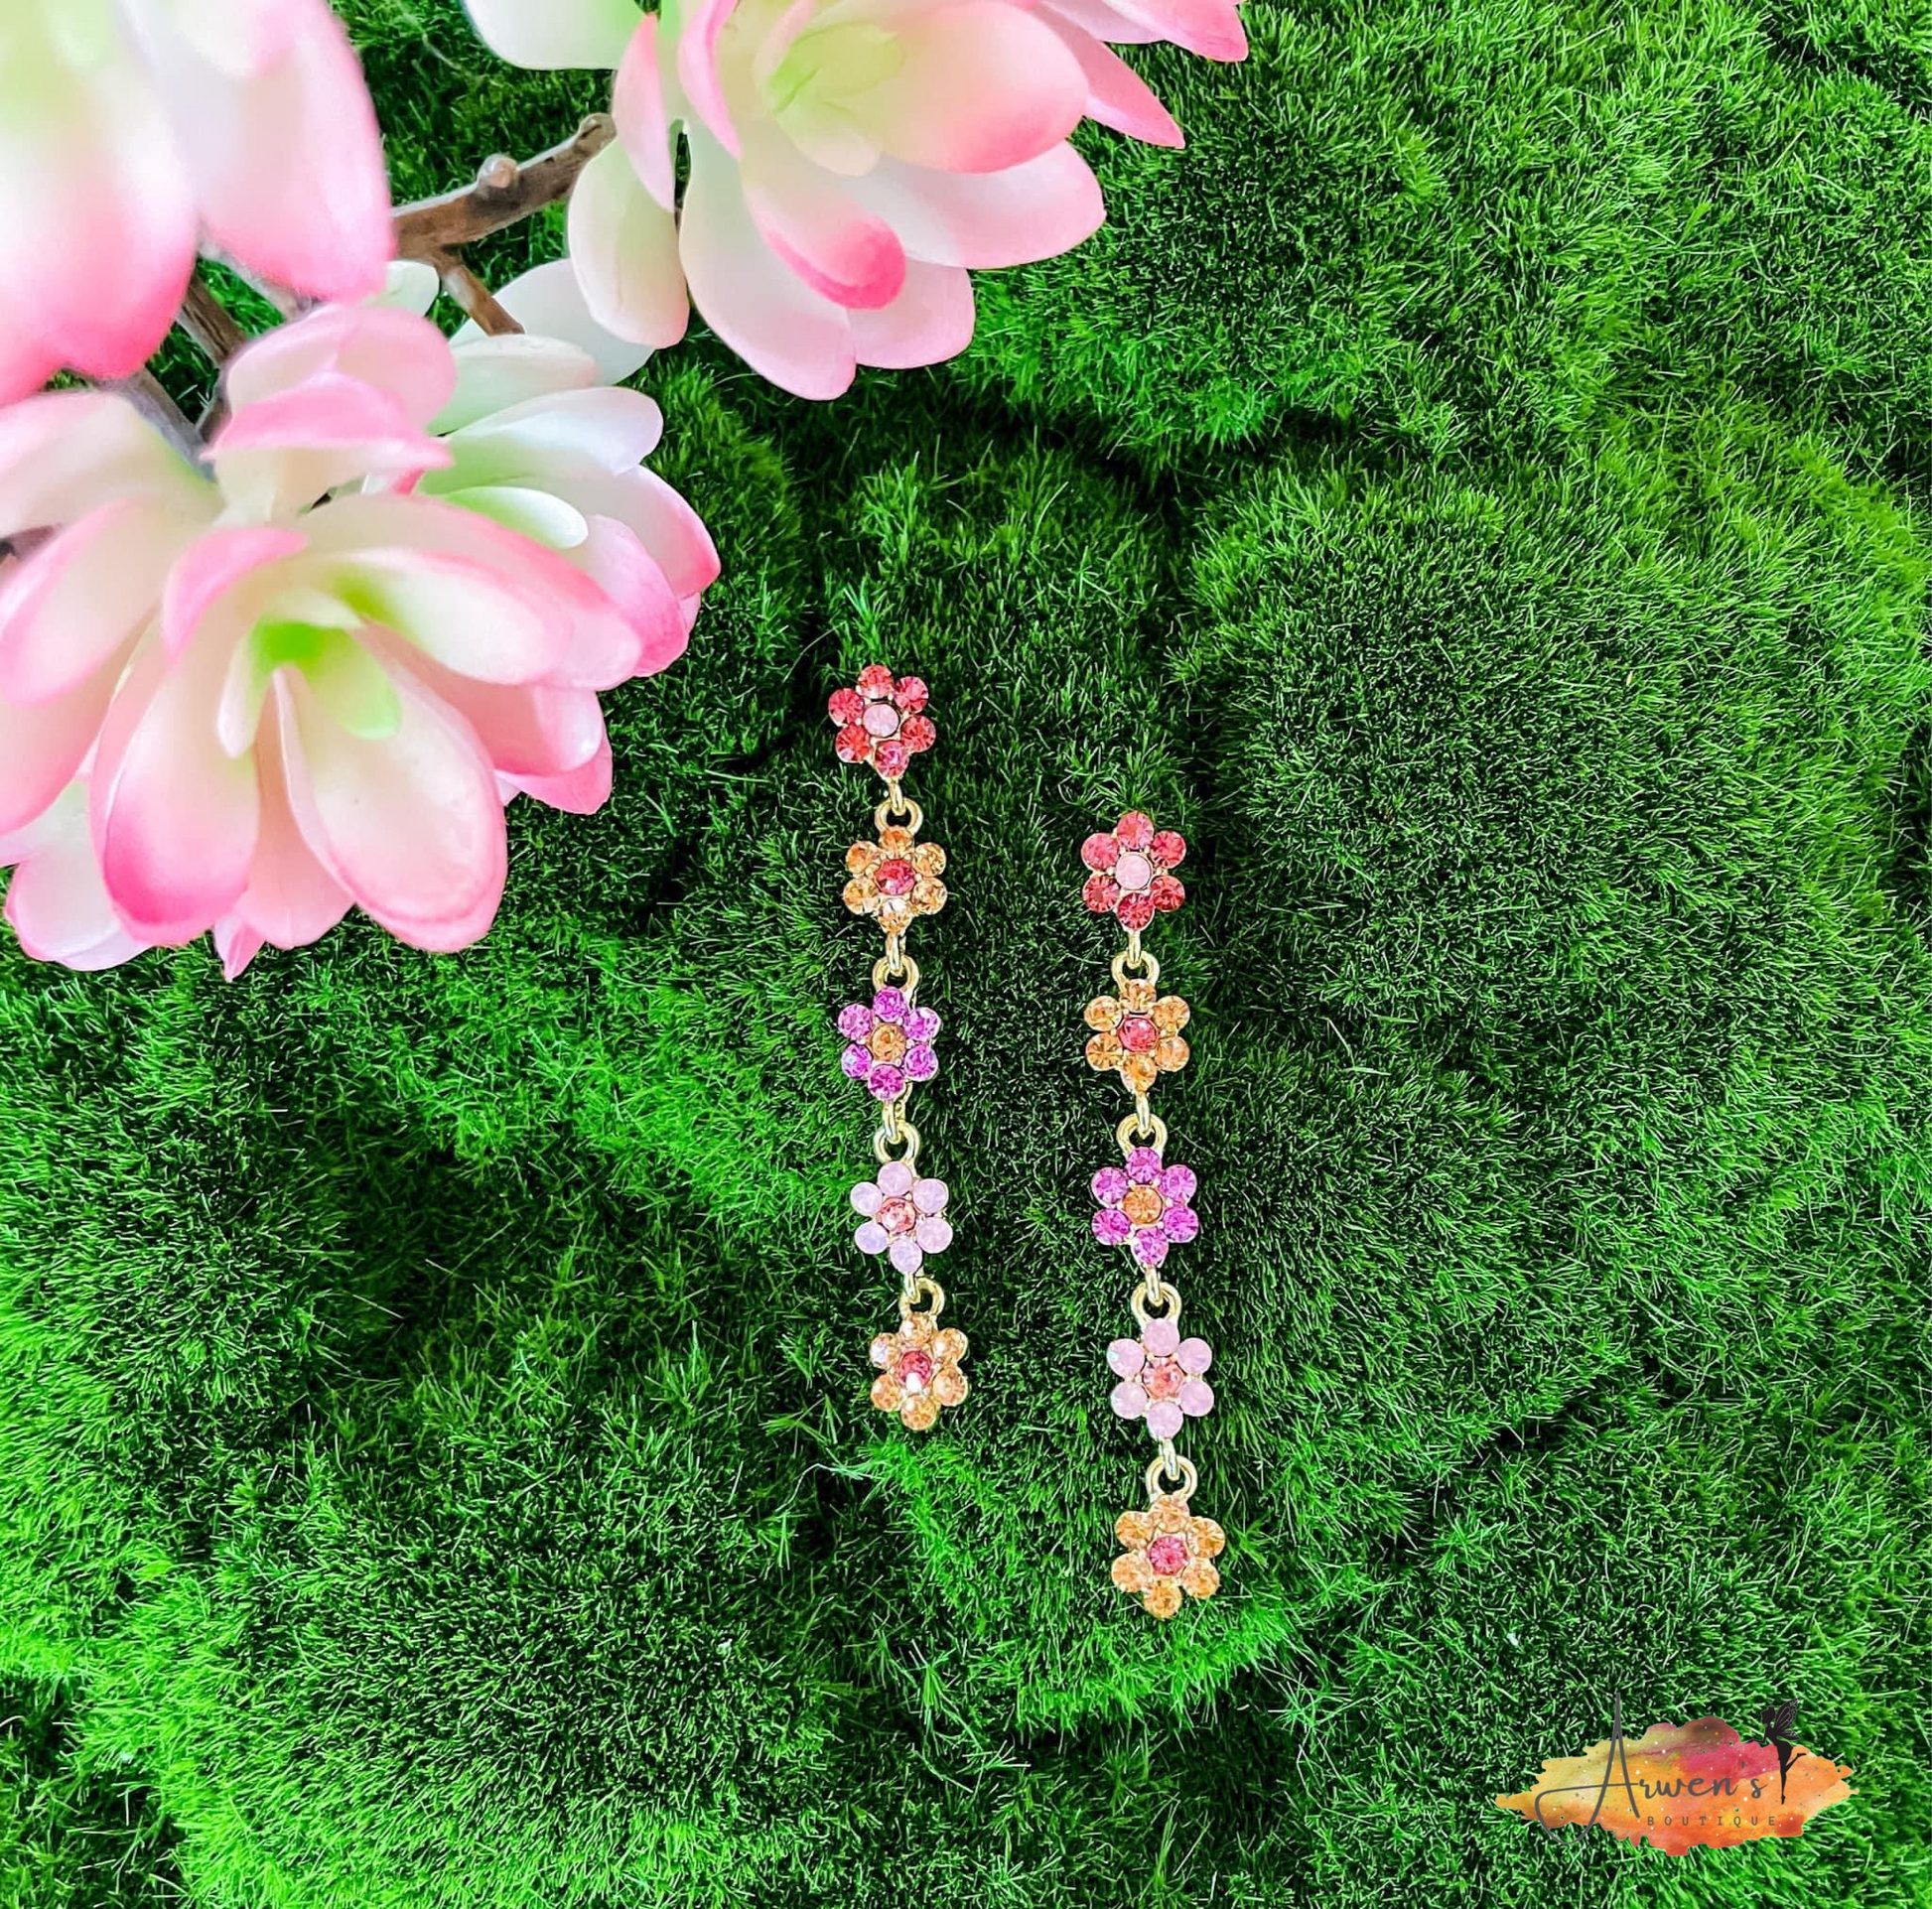 Rhinestone Flower Earrings - Shop women apparel, Jewelry, bath & beauty products online - Arwen's Boutique